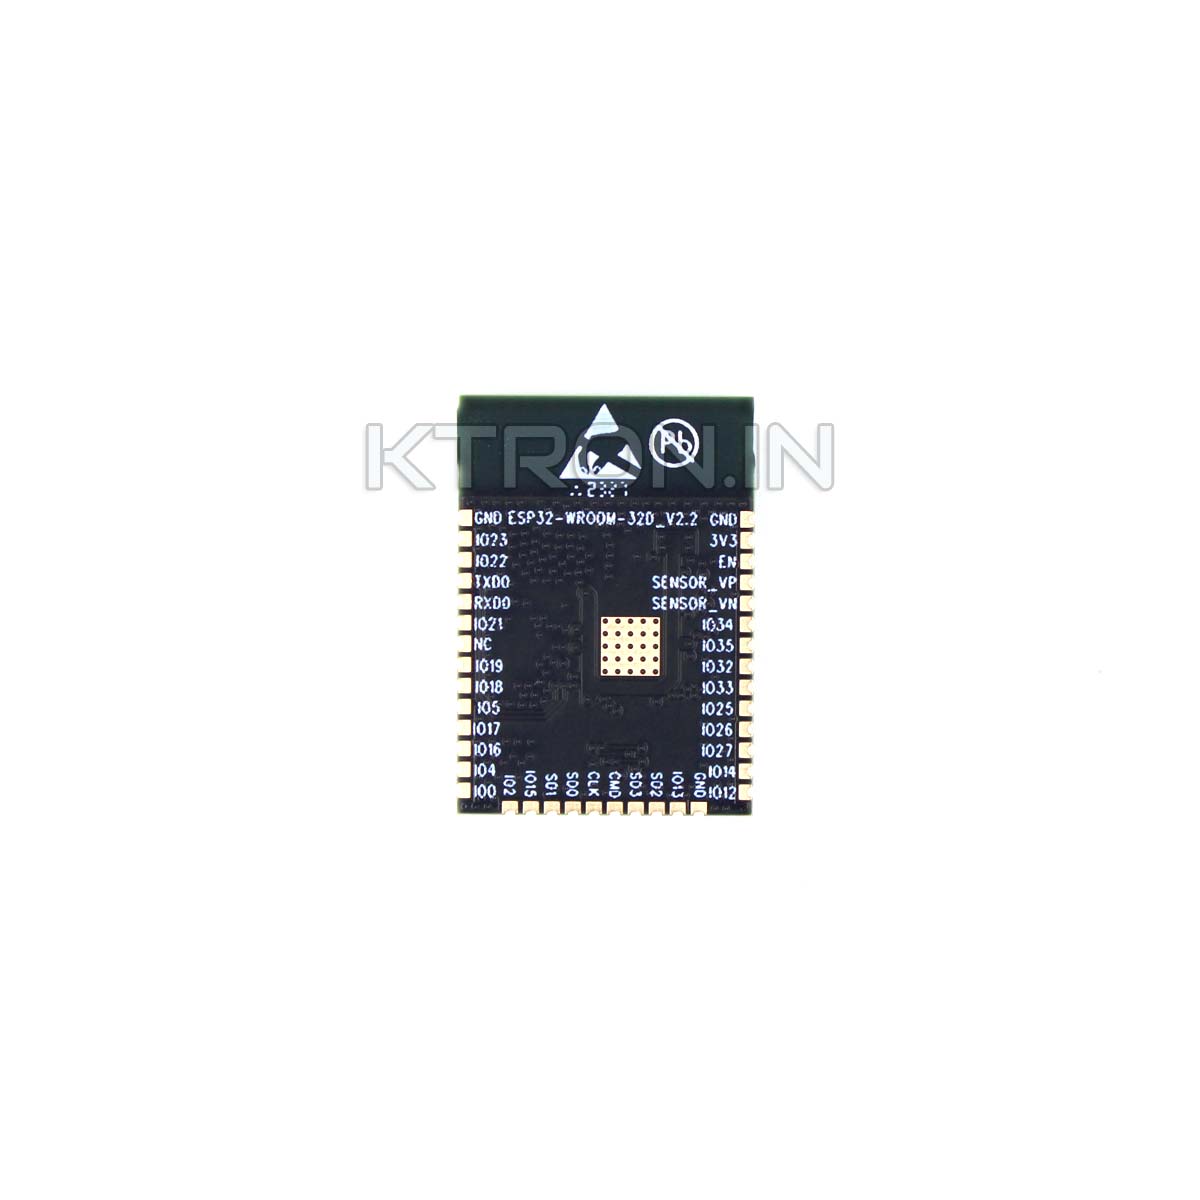 Chip ESP 32-WROOM-32D